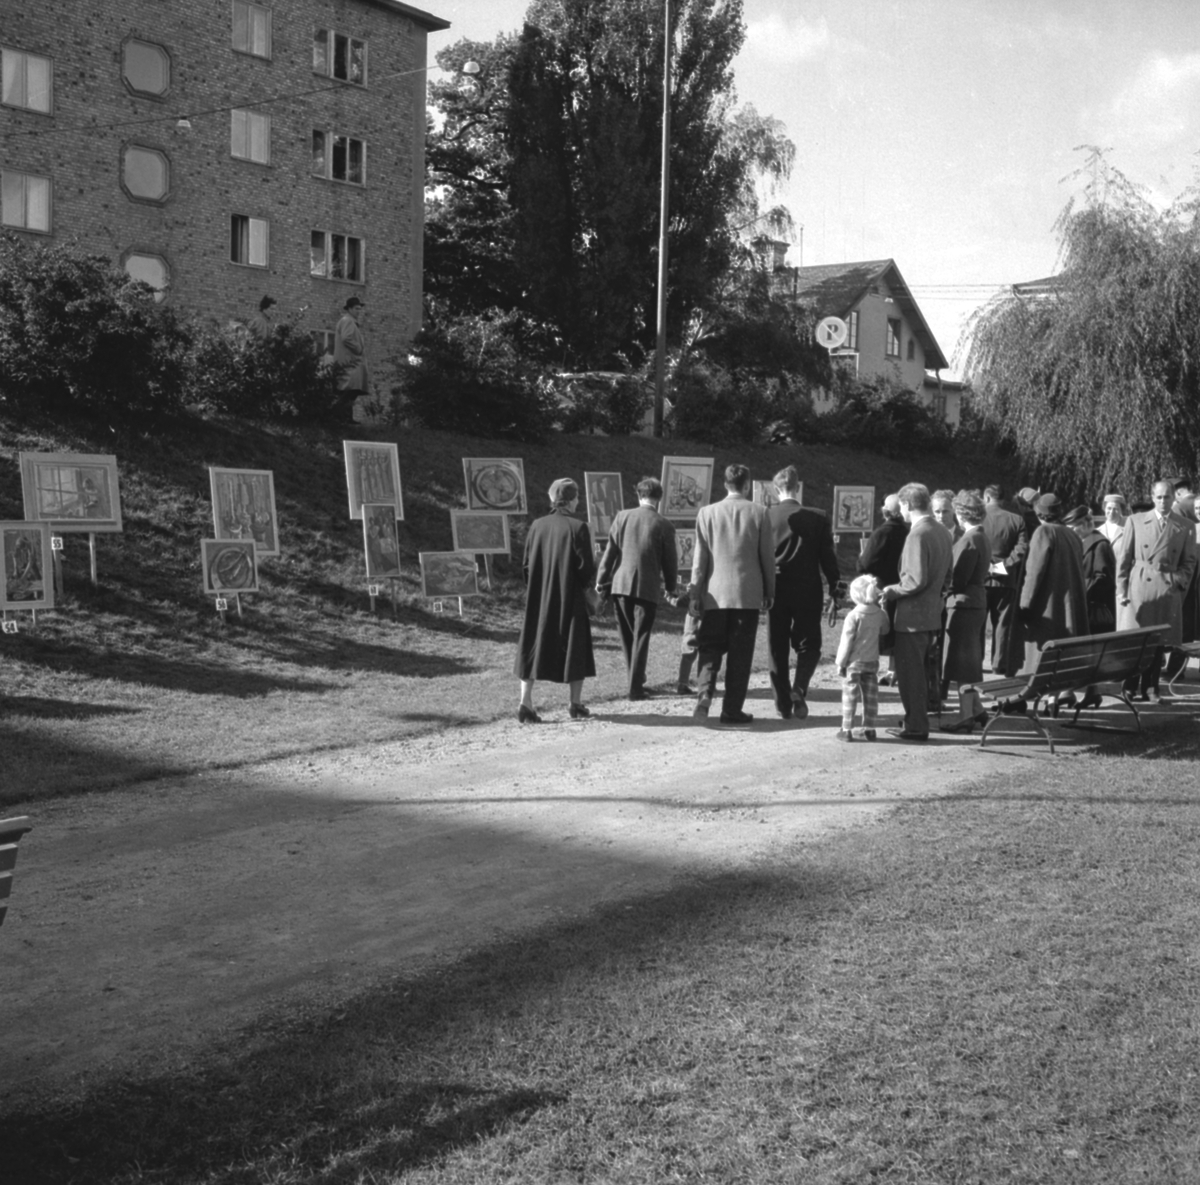 Serie bilder från Lions, minst sagt, öppna konstutställning i Linköping. Konstverken exponerades i slänten vid strandpromenaden utmed Hamngatan. Tills exakt datering klargörs skrivs här omkring år 1950.